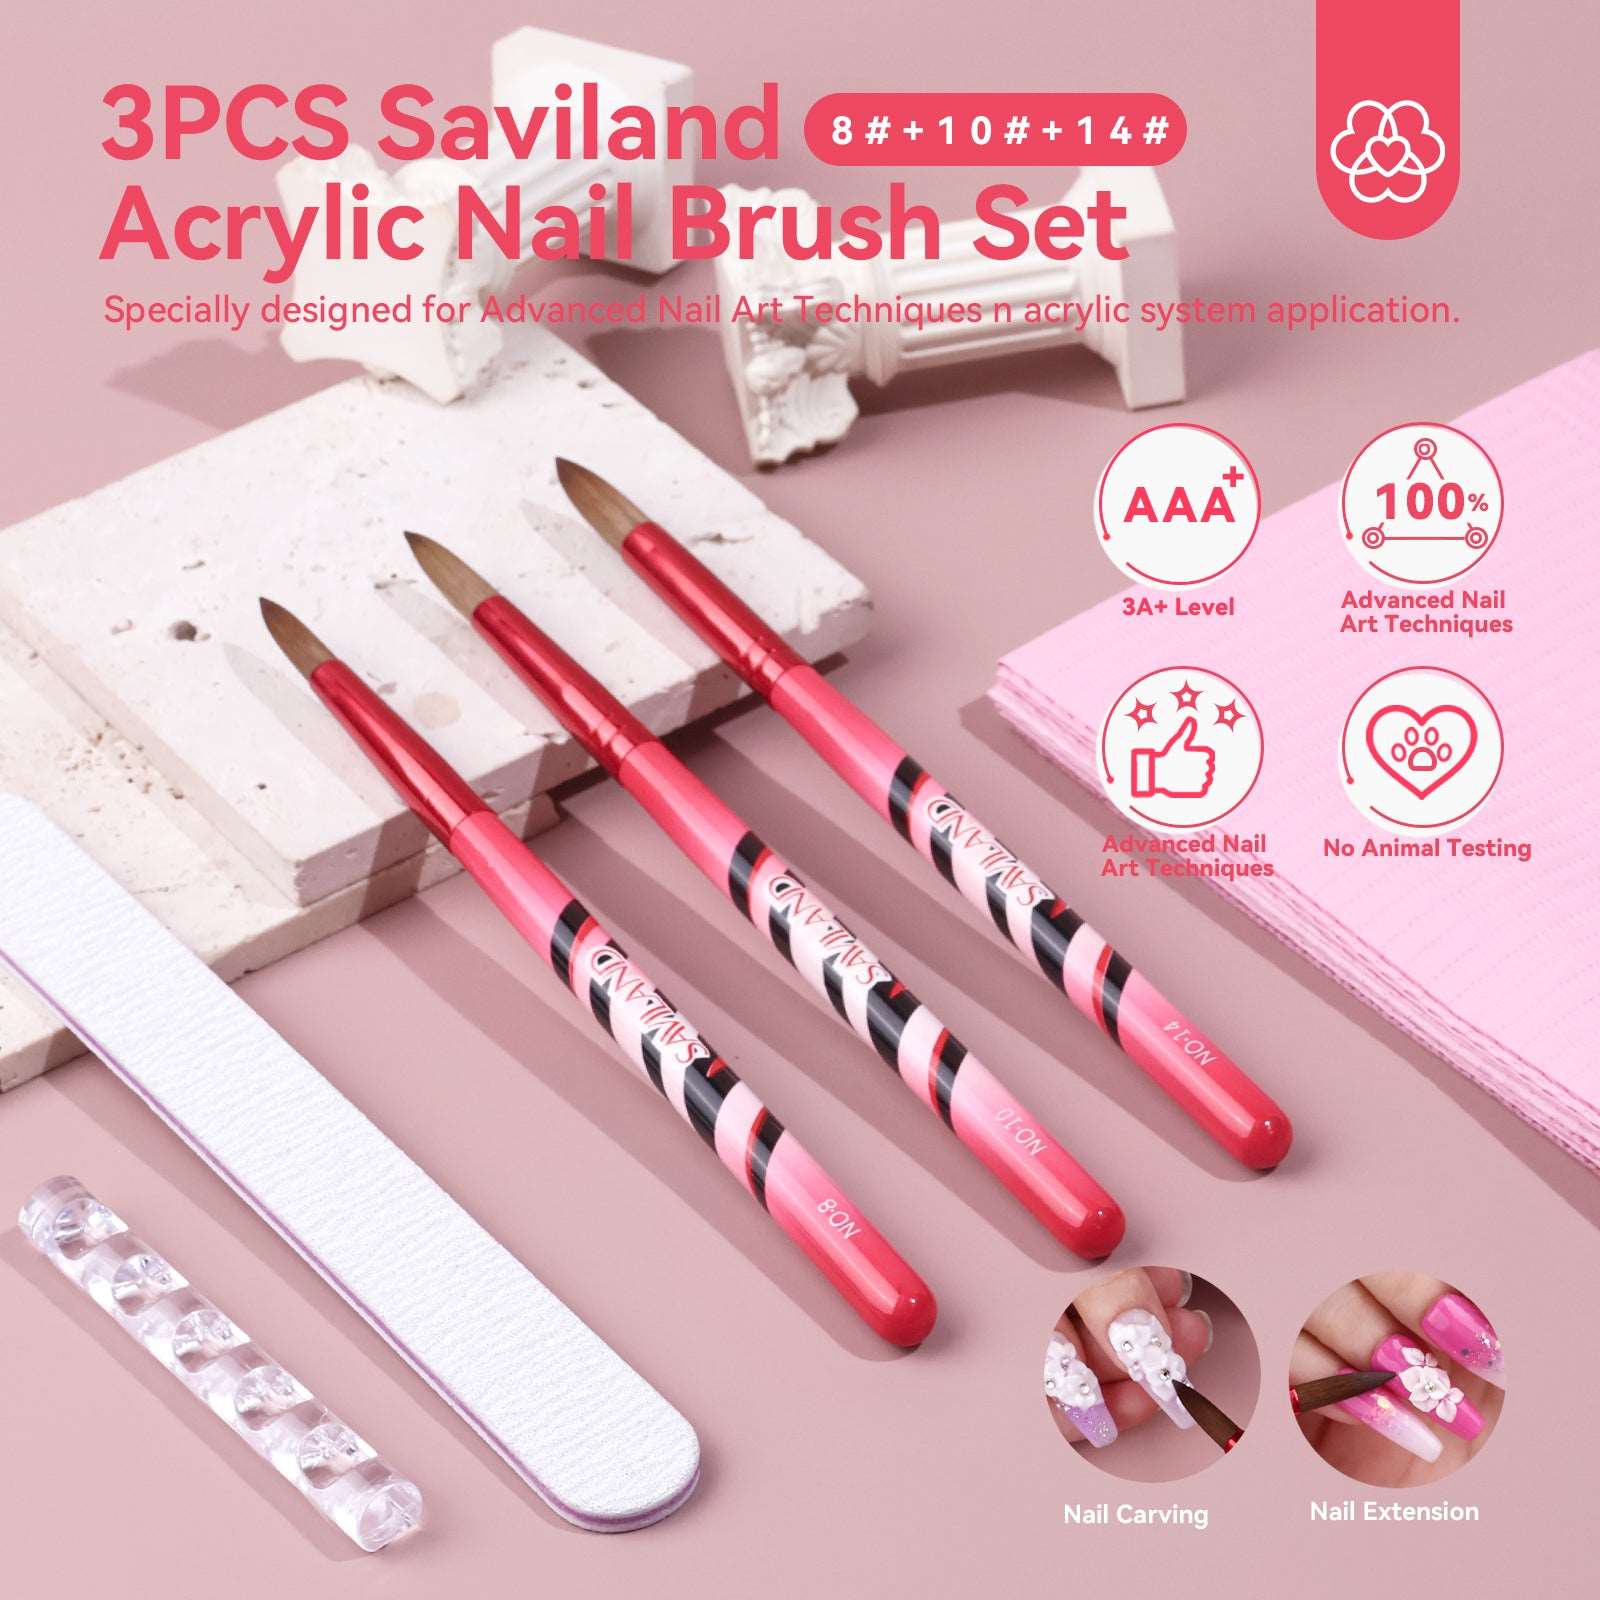 Acrylic Nail Brush Set - 3Pcs Acrylic Brushes for Nails